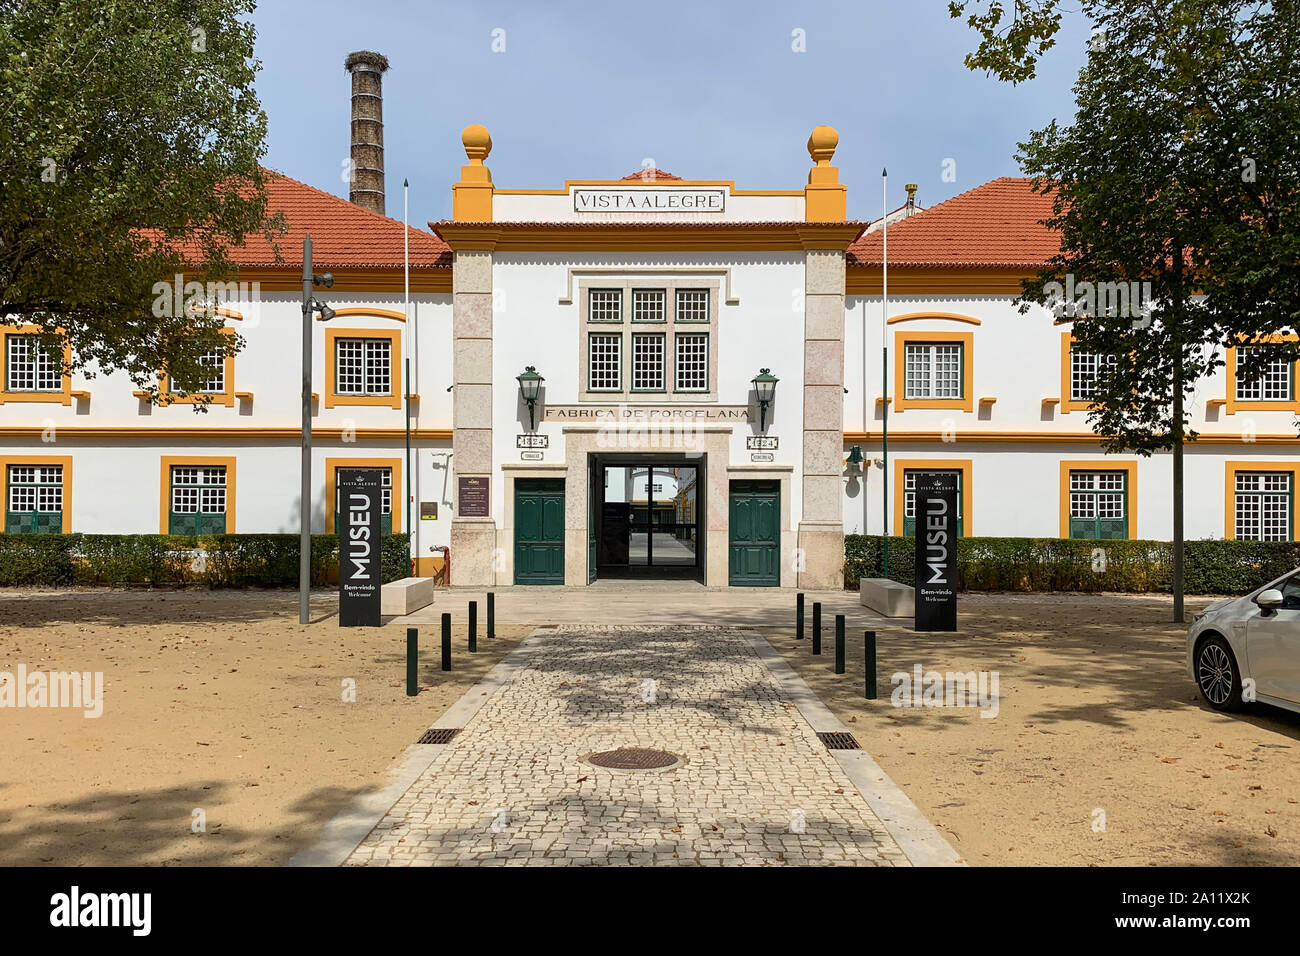 September 2019, Vista Alegre ceramics factory, Portugal Stock Photo